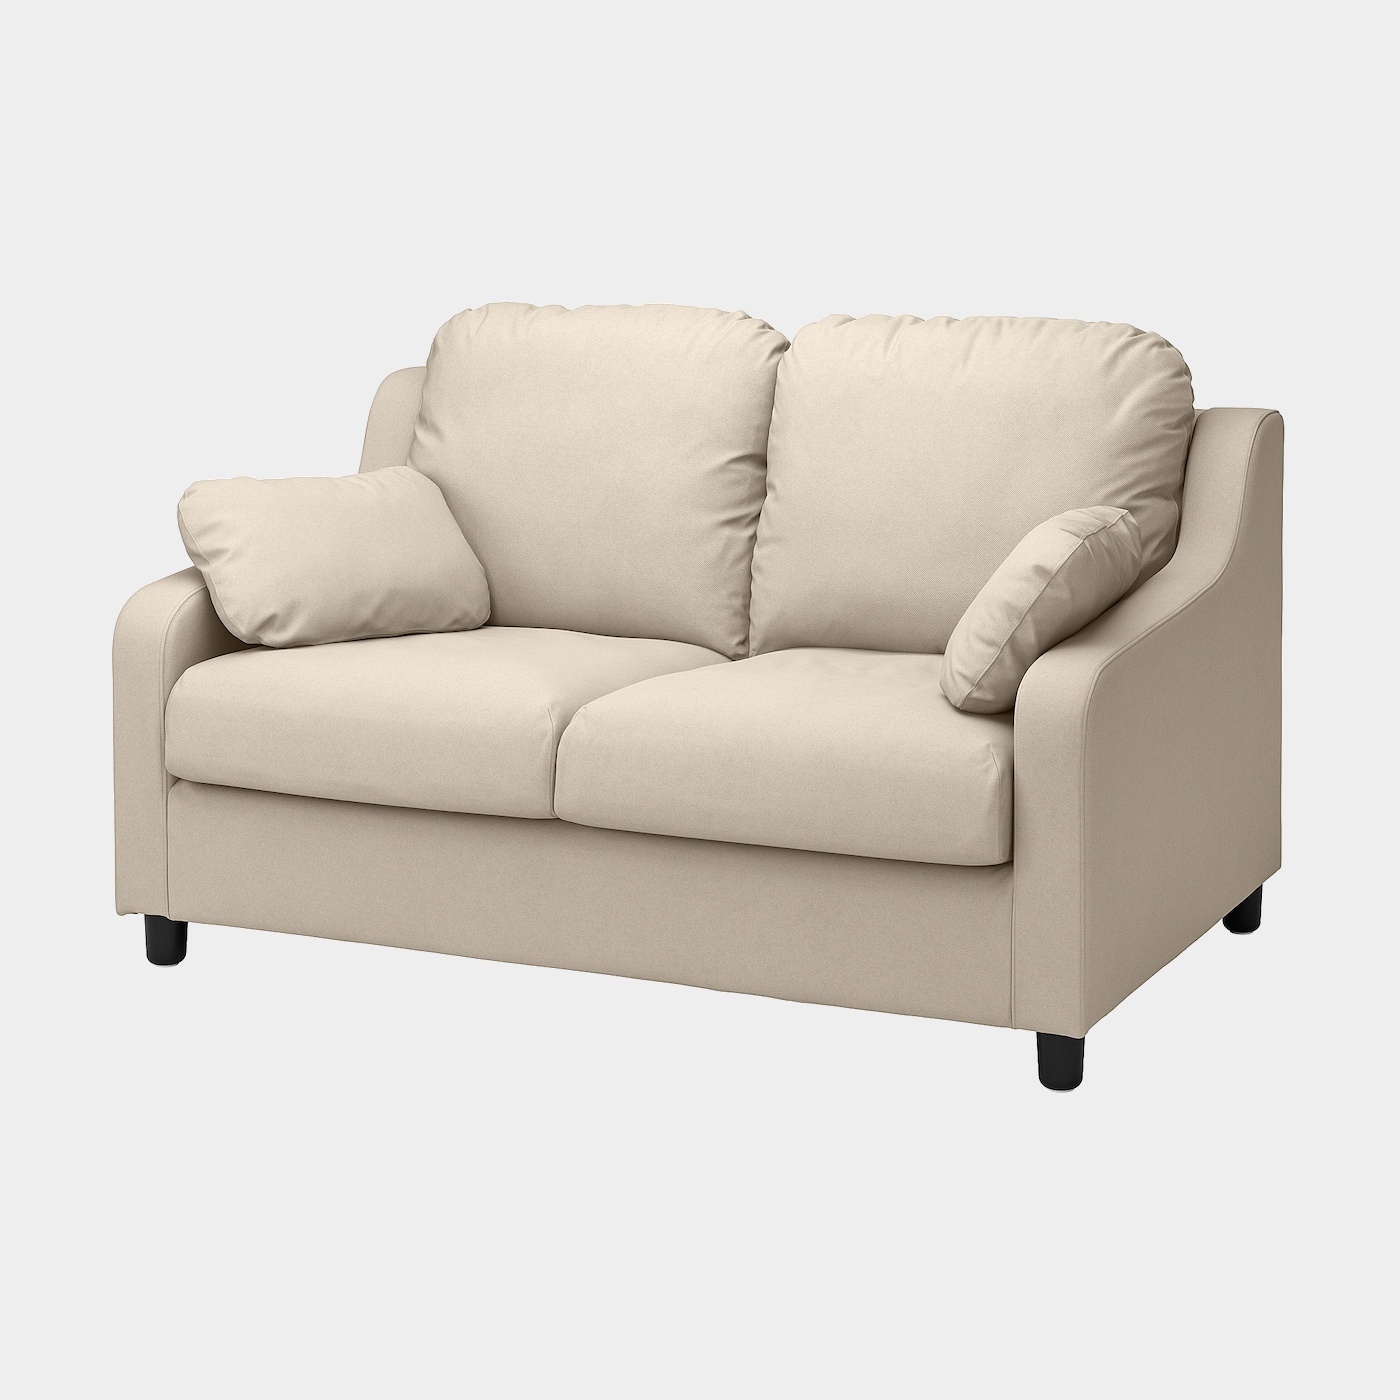 VINLIDEN 2er-Sofa  -  - Möbel Ideen für dein Zuhause von Home Trends. Möbel Trends von Social Media Influencer für dein Skandi Zuhause.